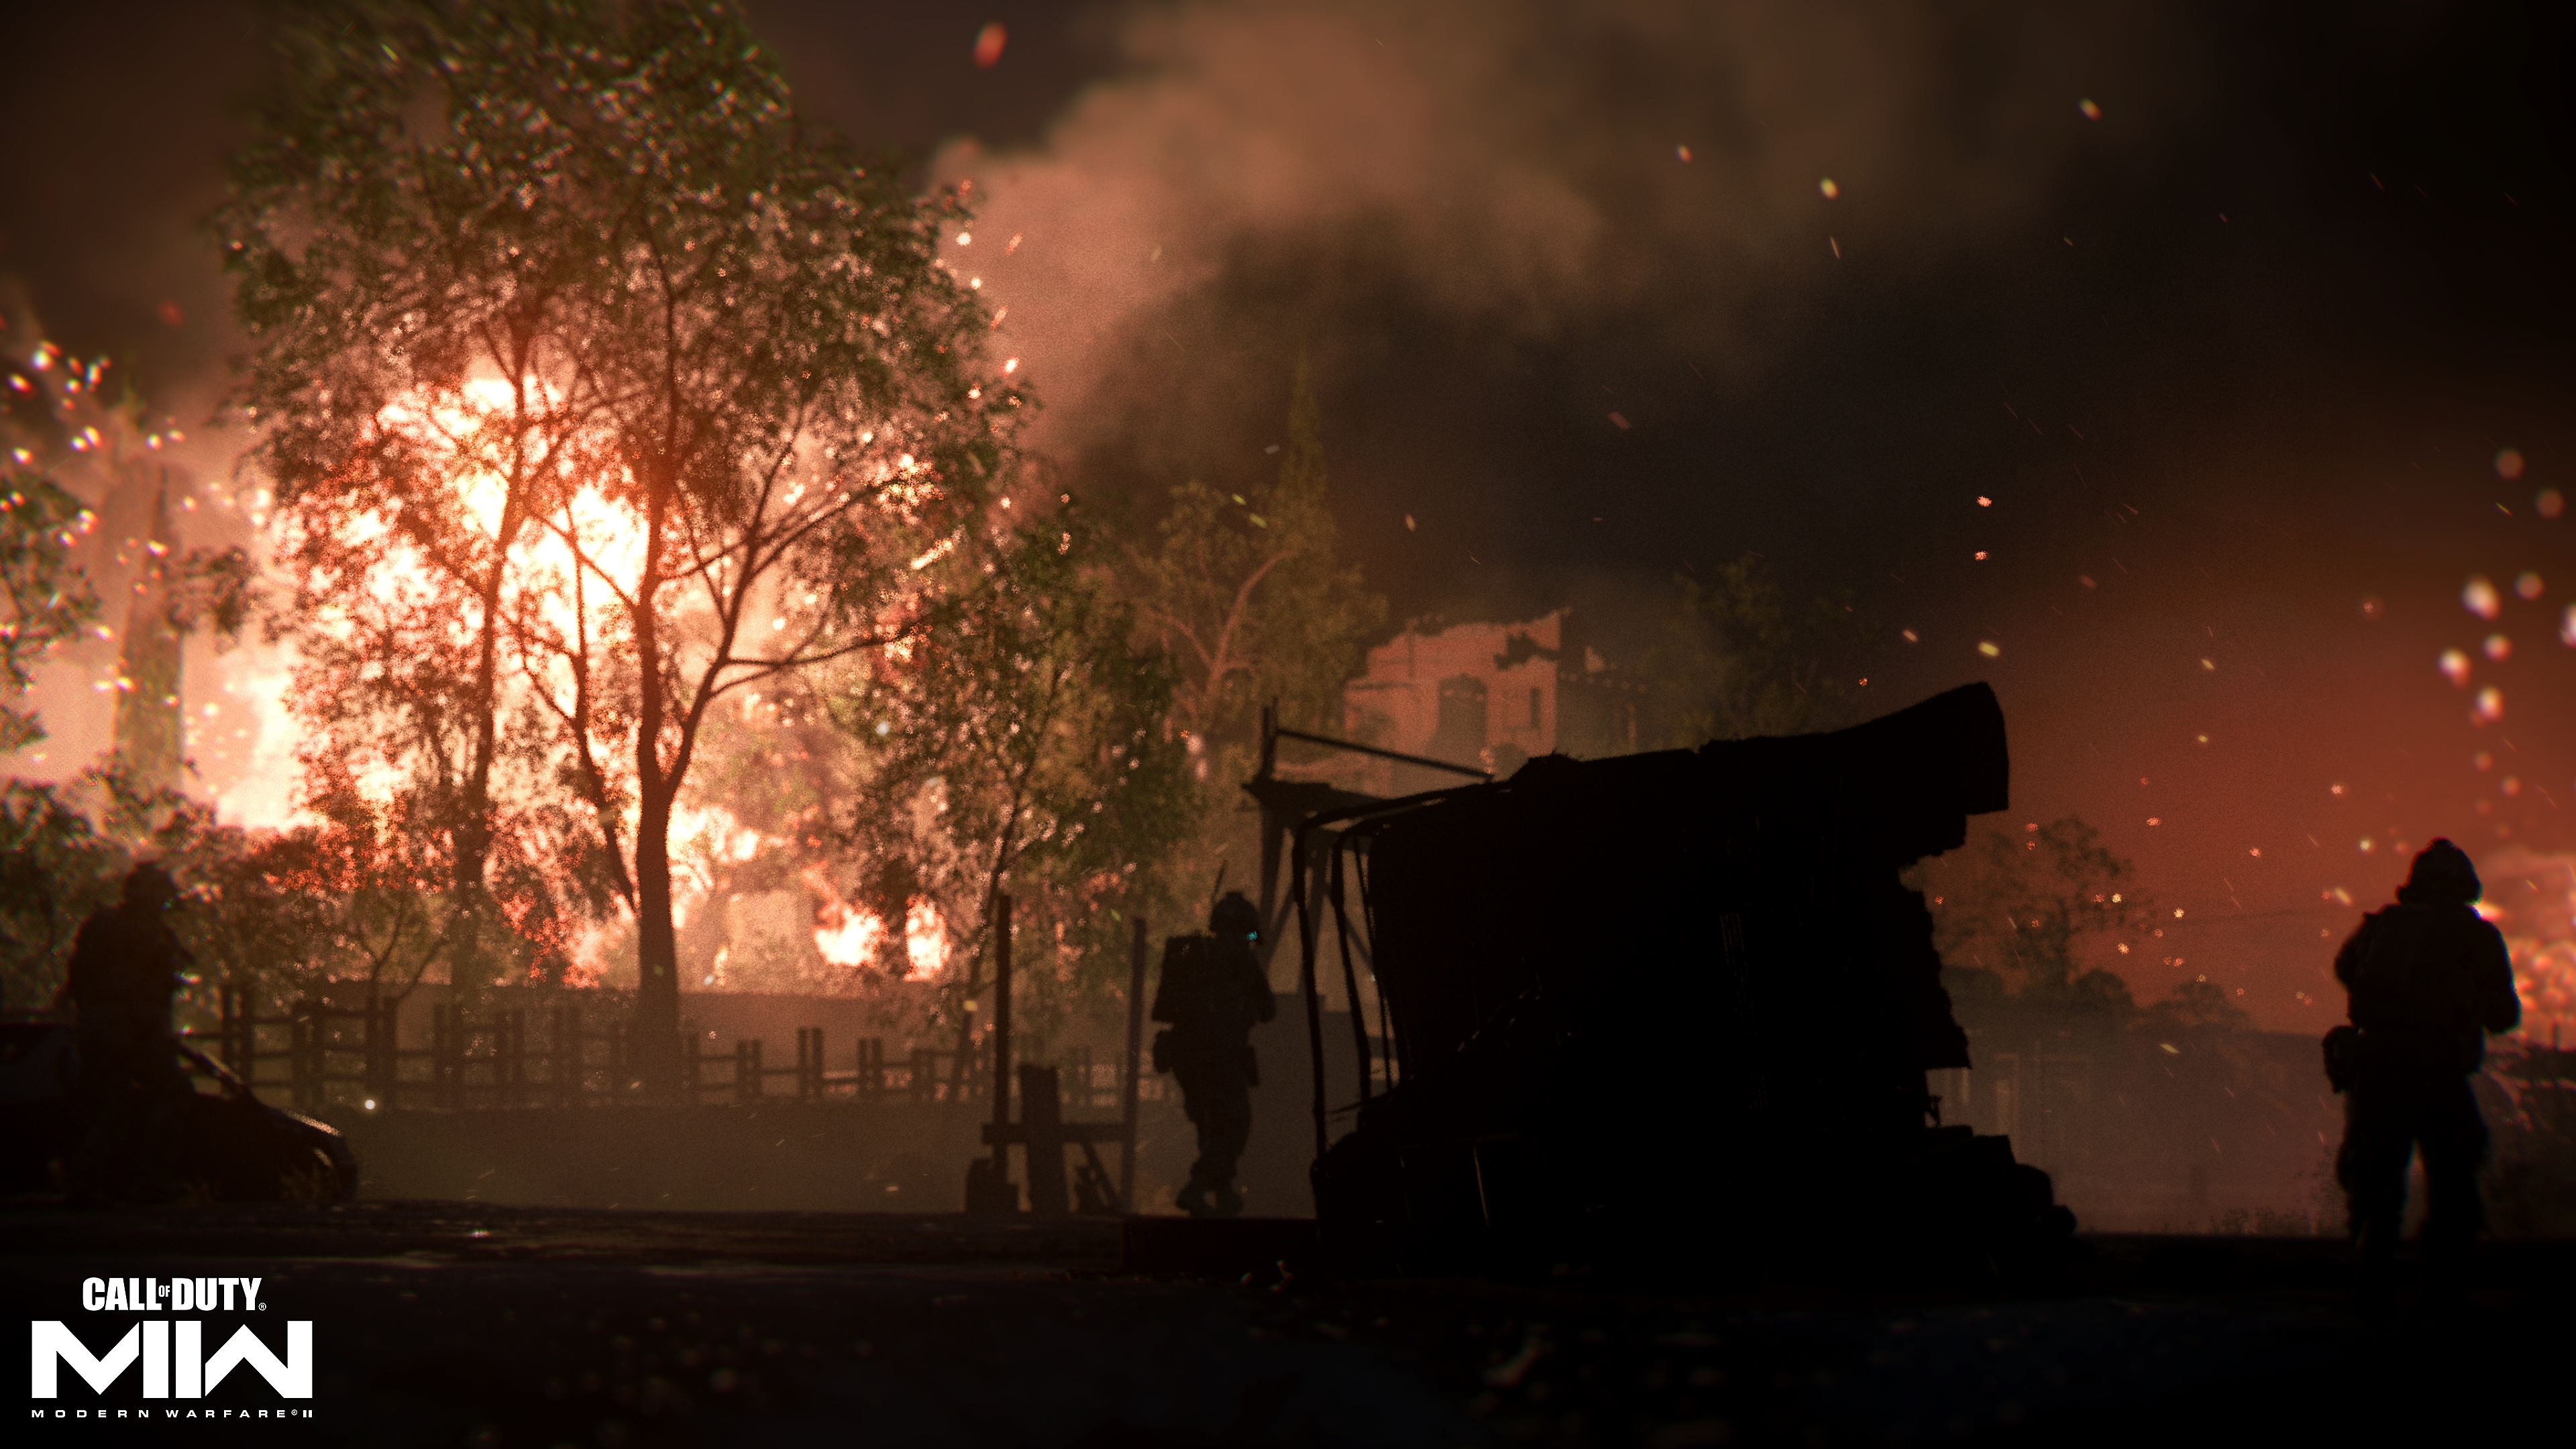 Call of Duty: Modern Warfare 2 2022 captura de pantalla enseñando fuego en la distancia detrás de un árbol